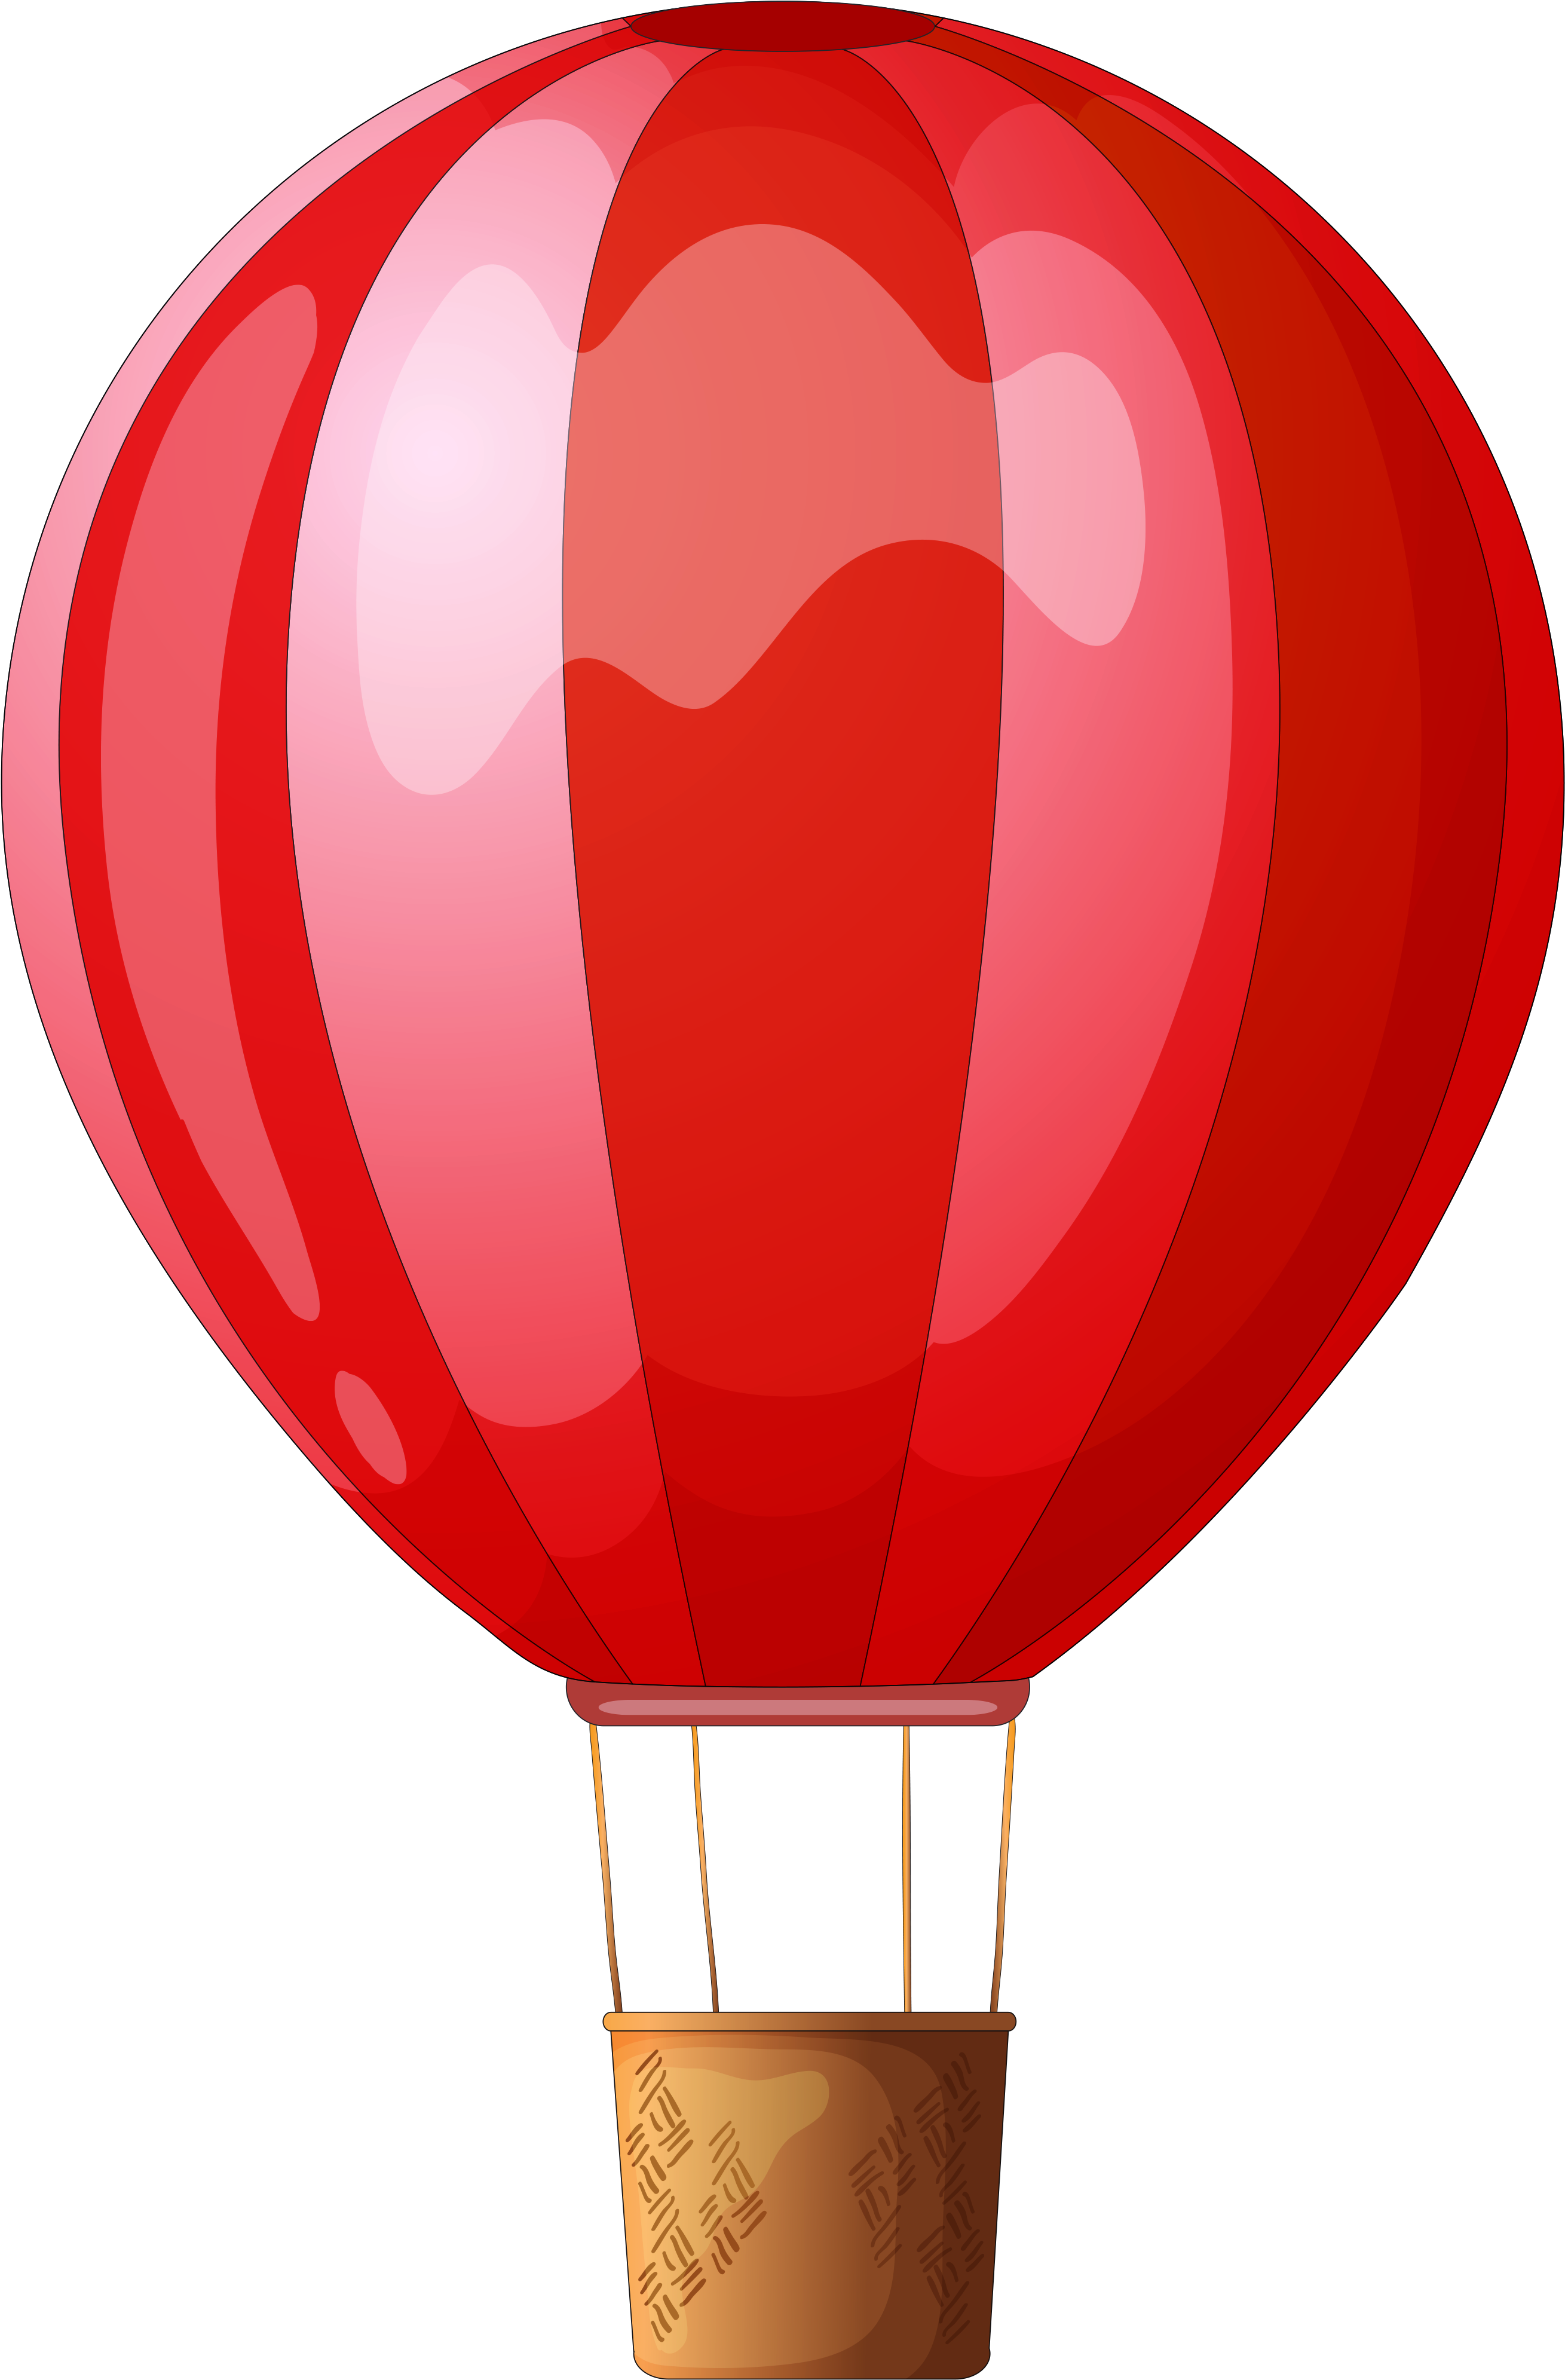 Balon - Balloon (2877x4255)